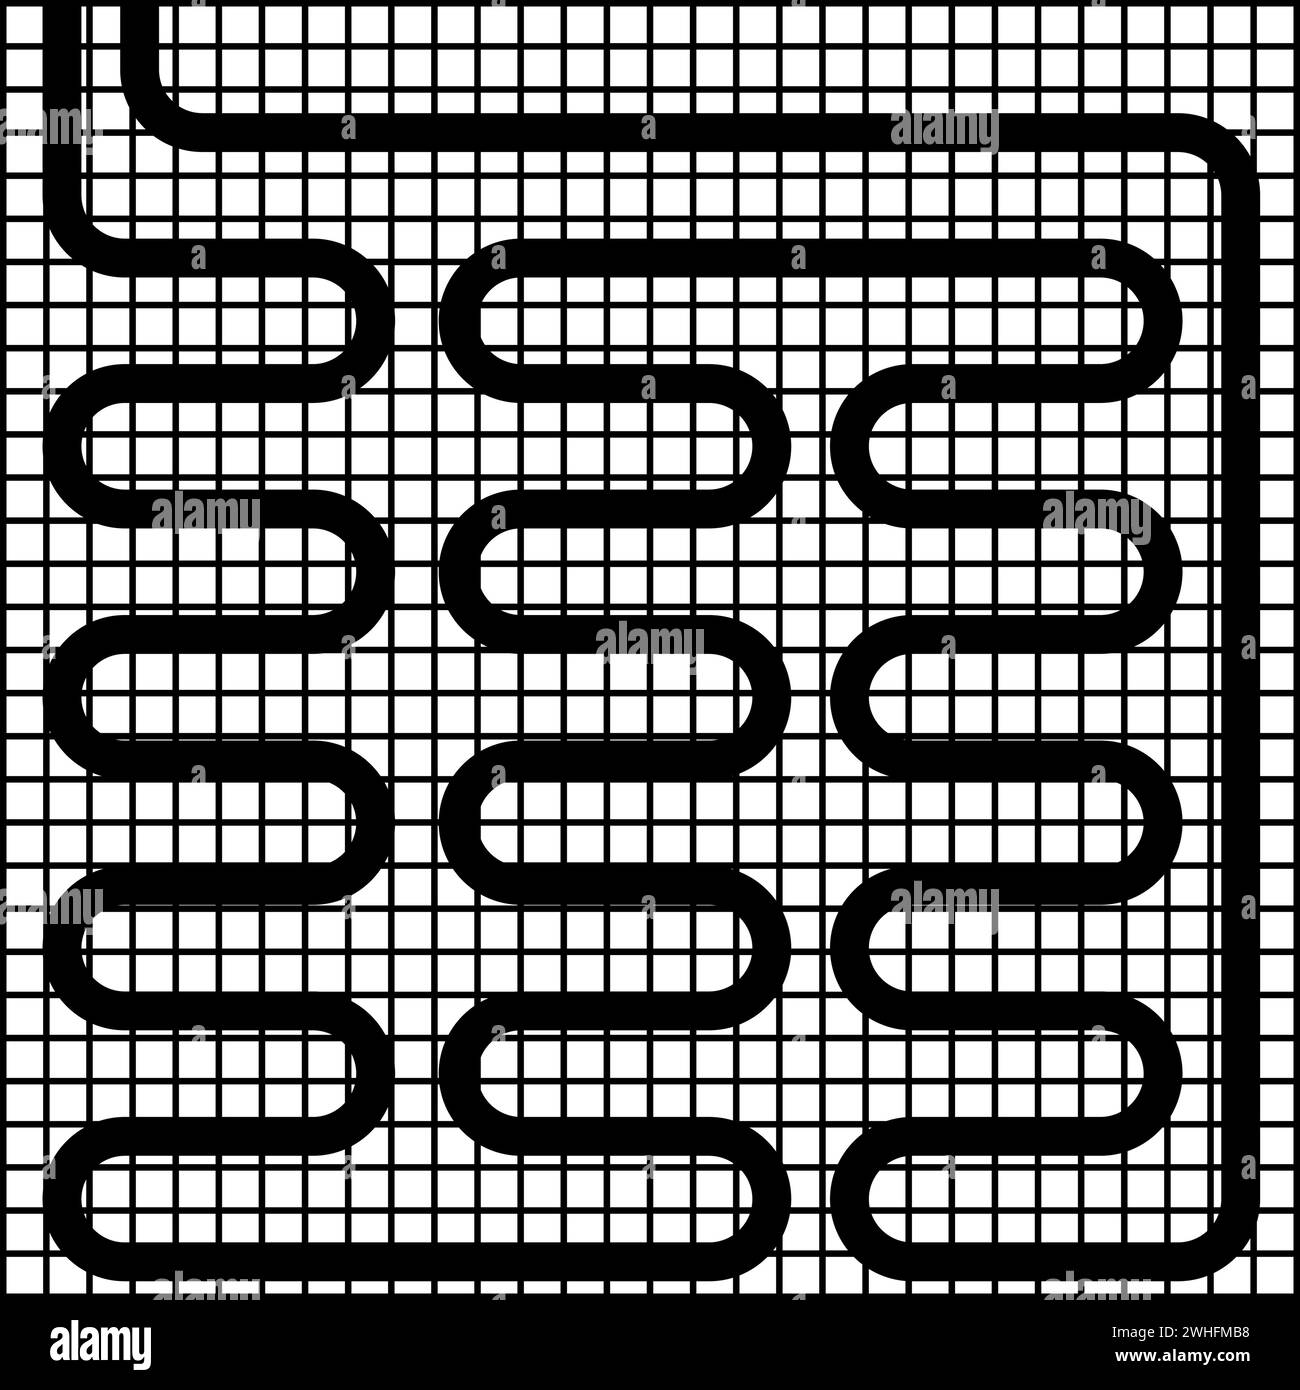 Elektrische Fußbodenheizung warm beheizt Symbol schwarz Farbe Vektor Illustration Bild flach Stil einfach Stock Vektor